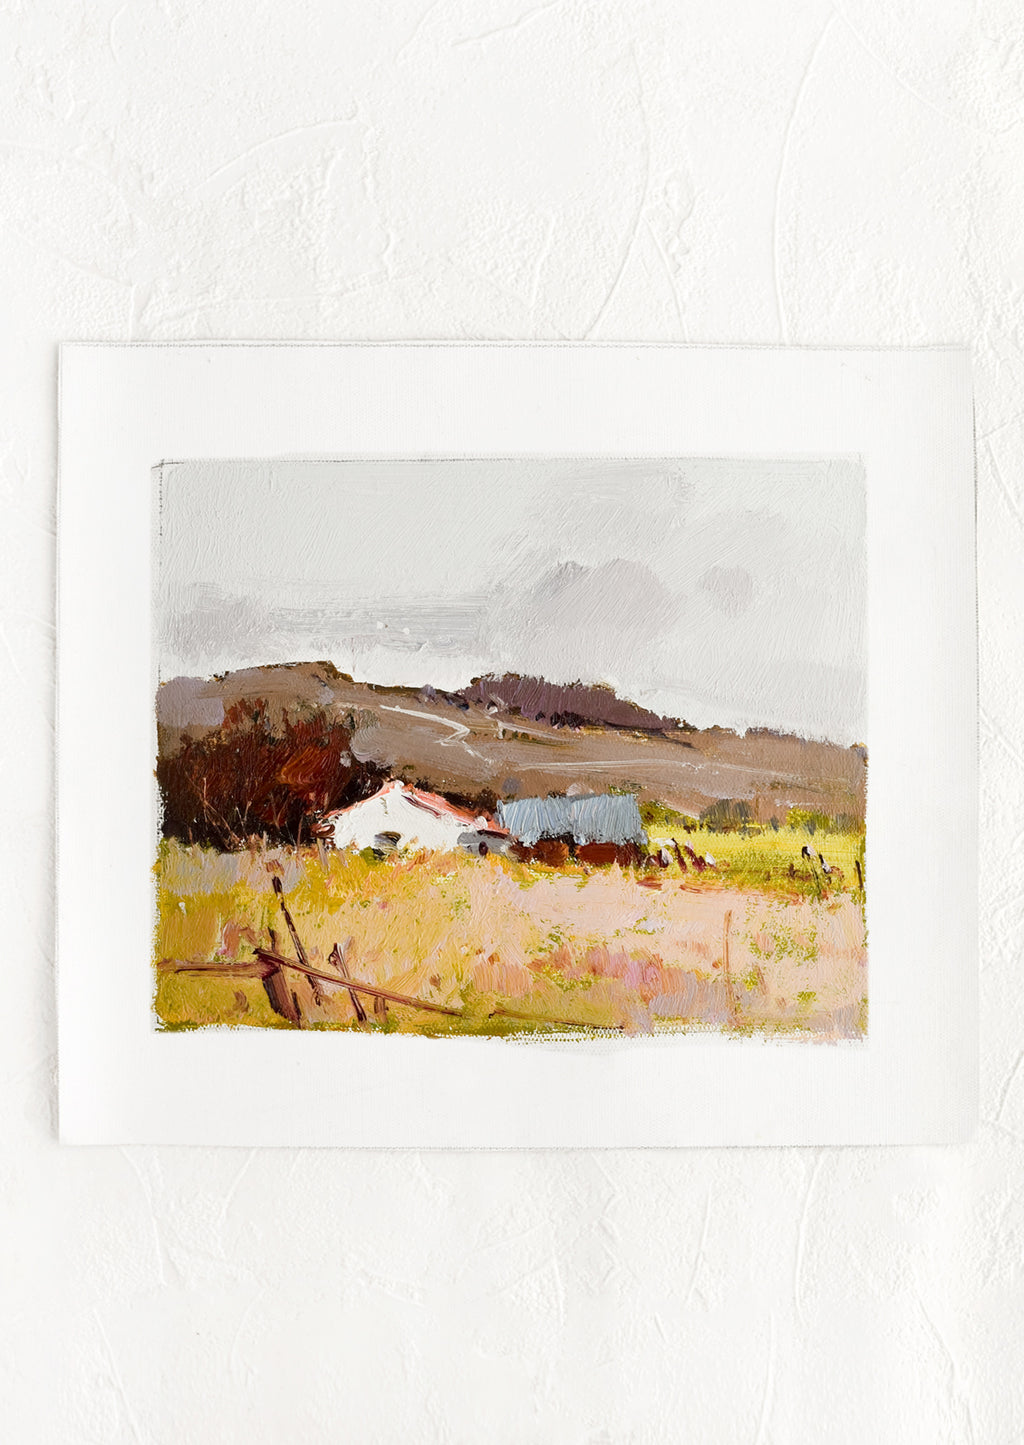 1: A pastoral landscape oil painting.